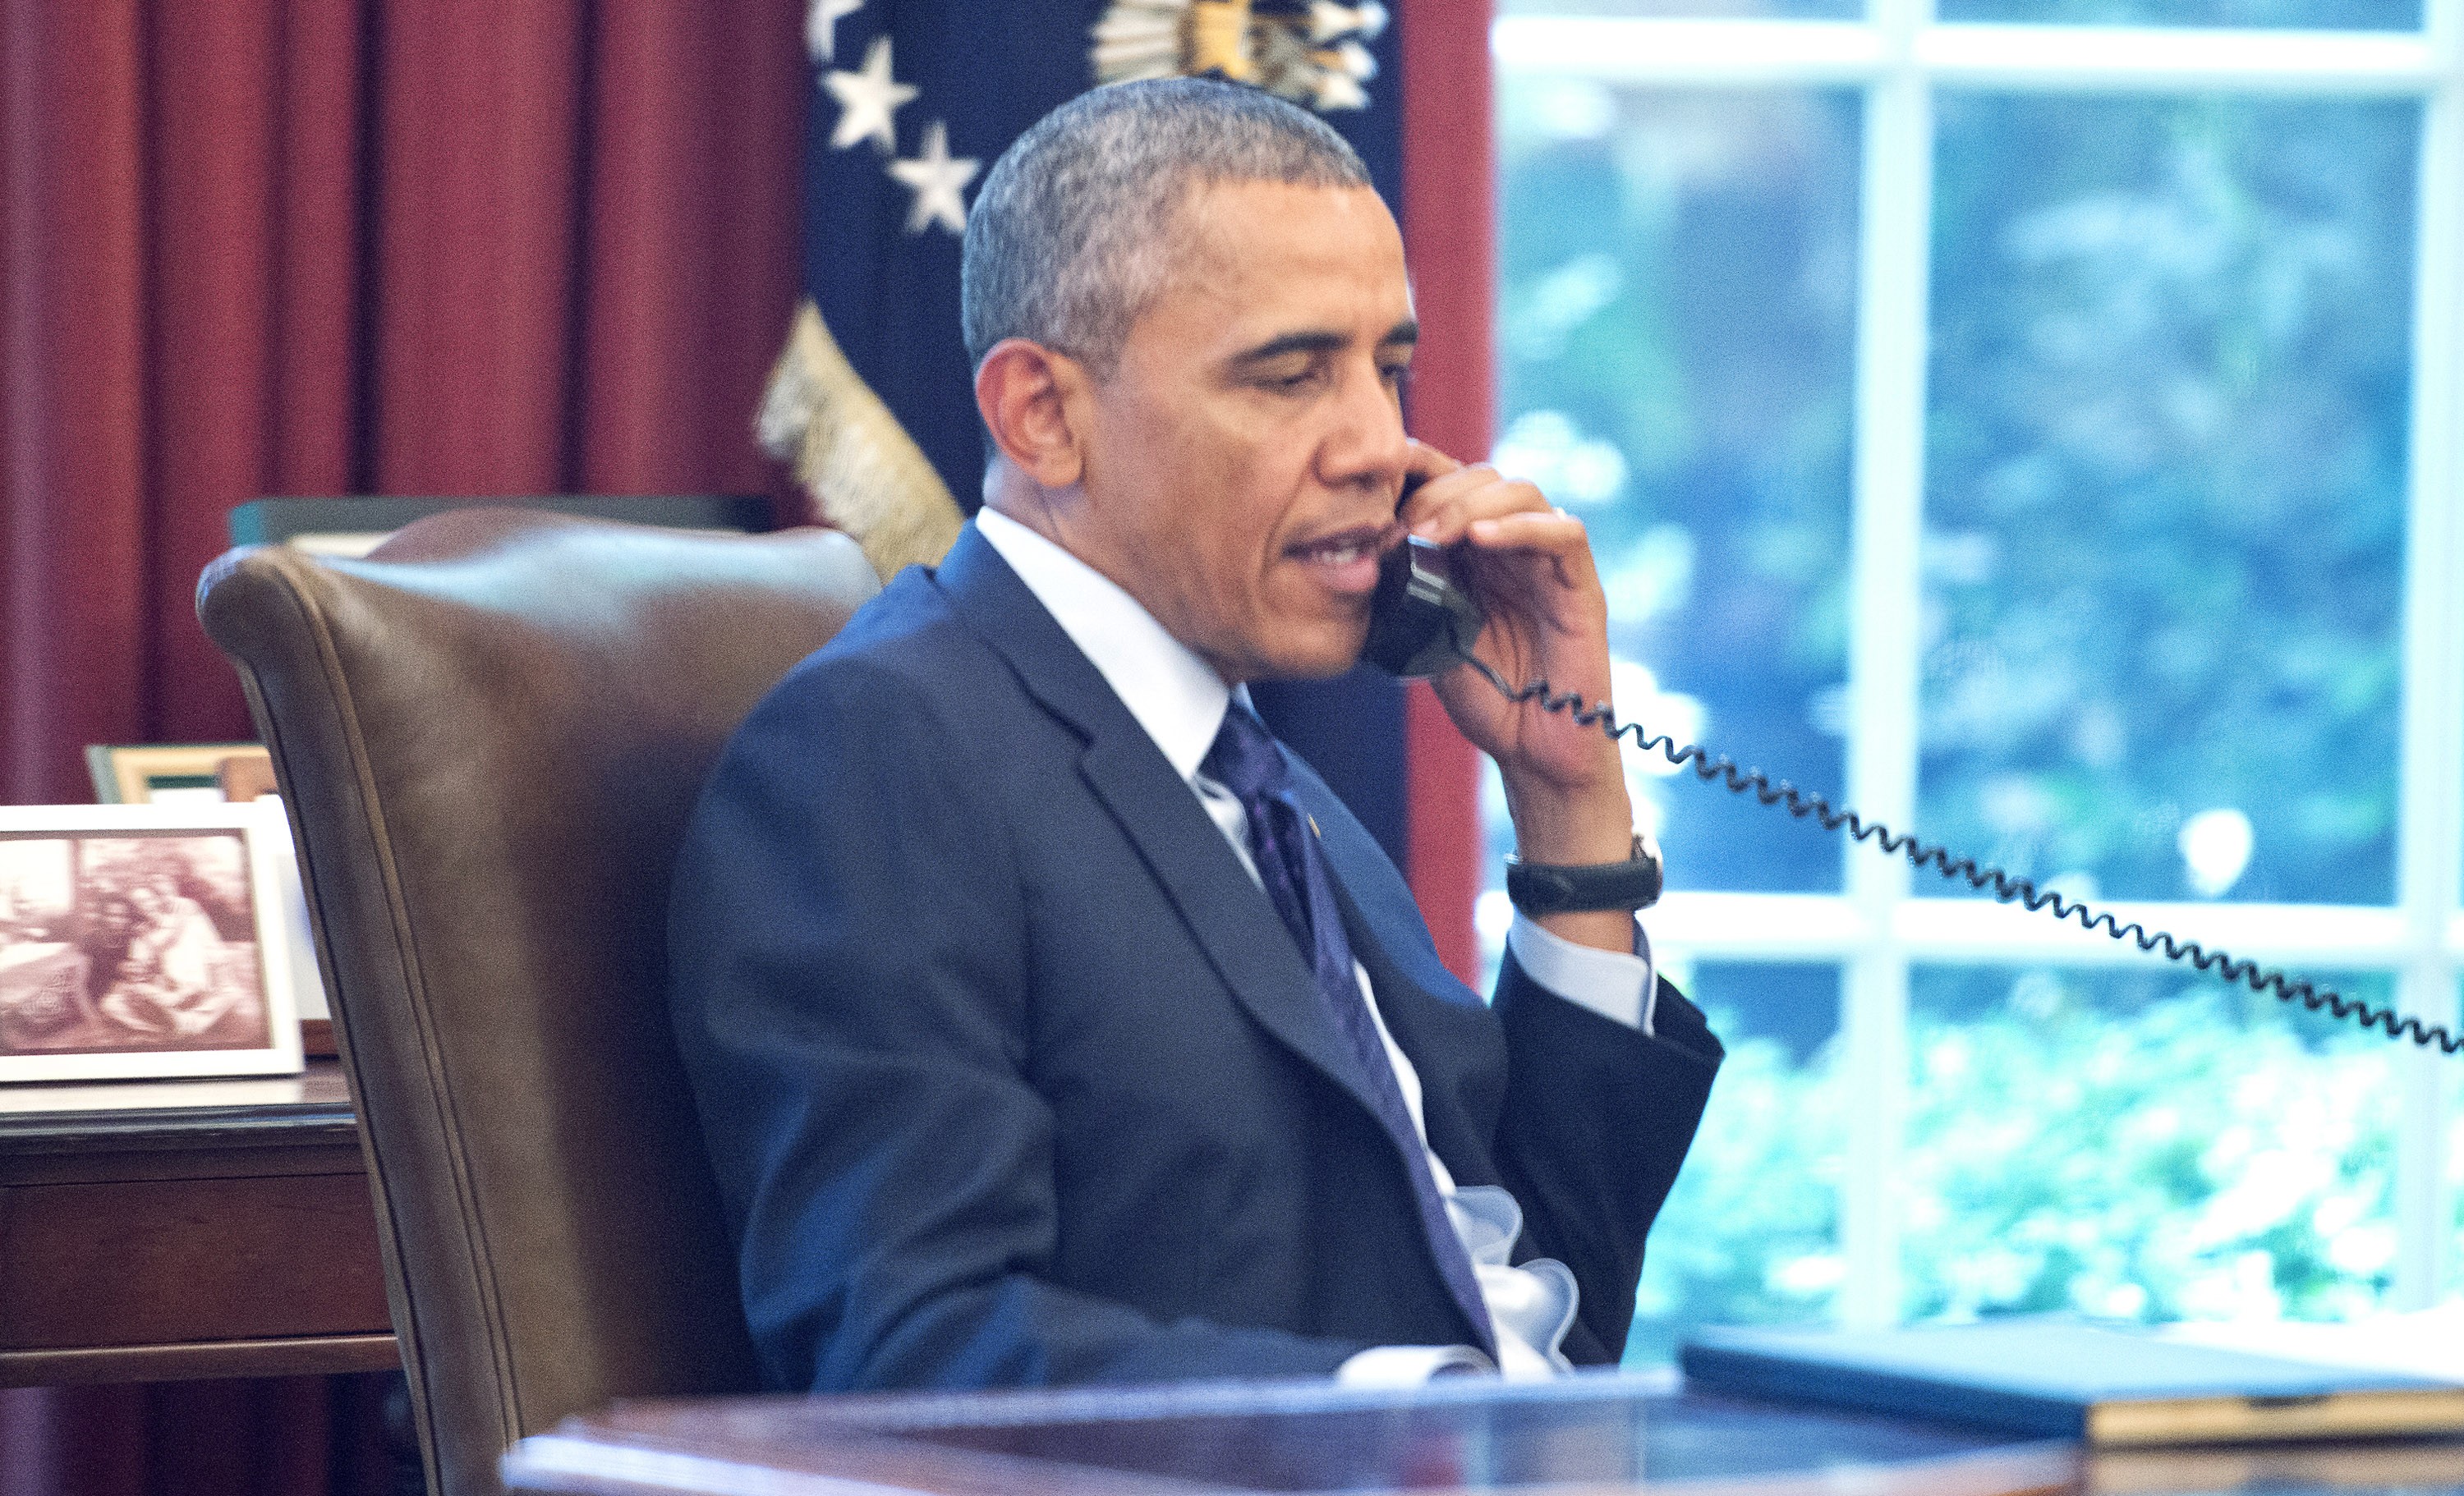 Obama, em uma conferência telefônica com grupos de saúde pública, apresenta seu novo plano (Foto: getty)